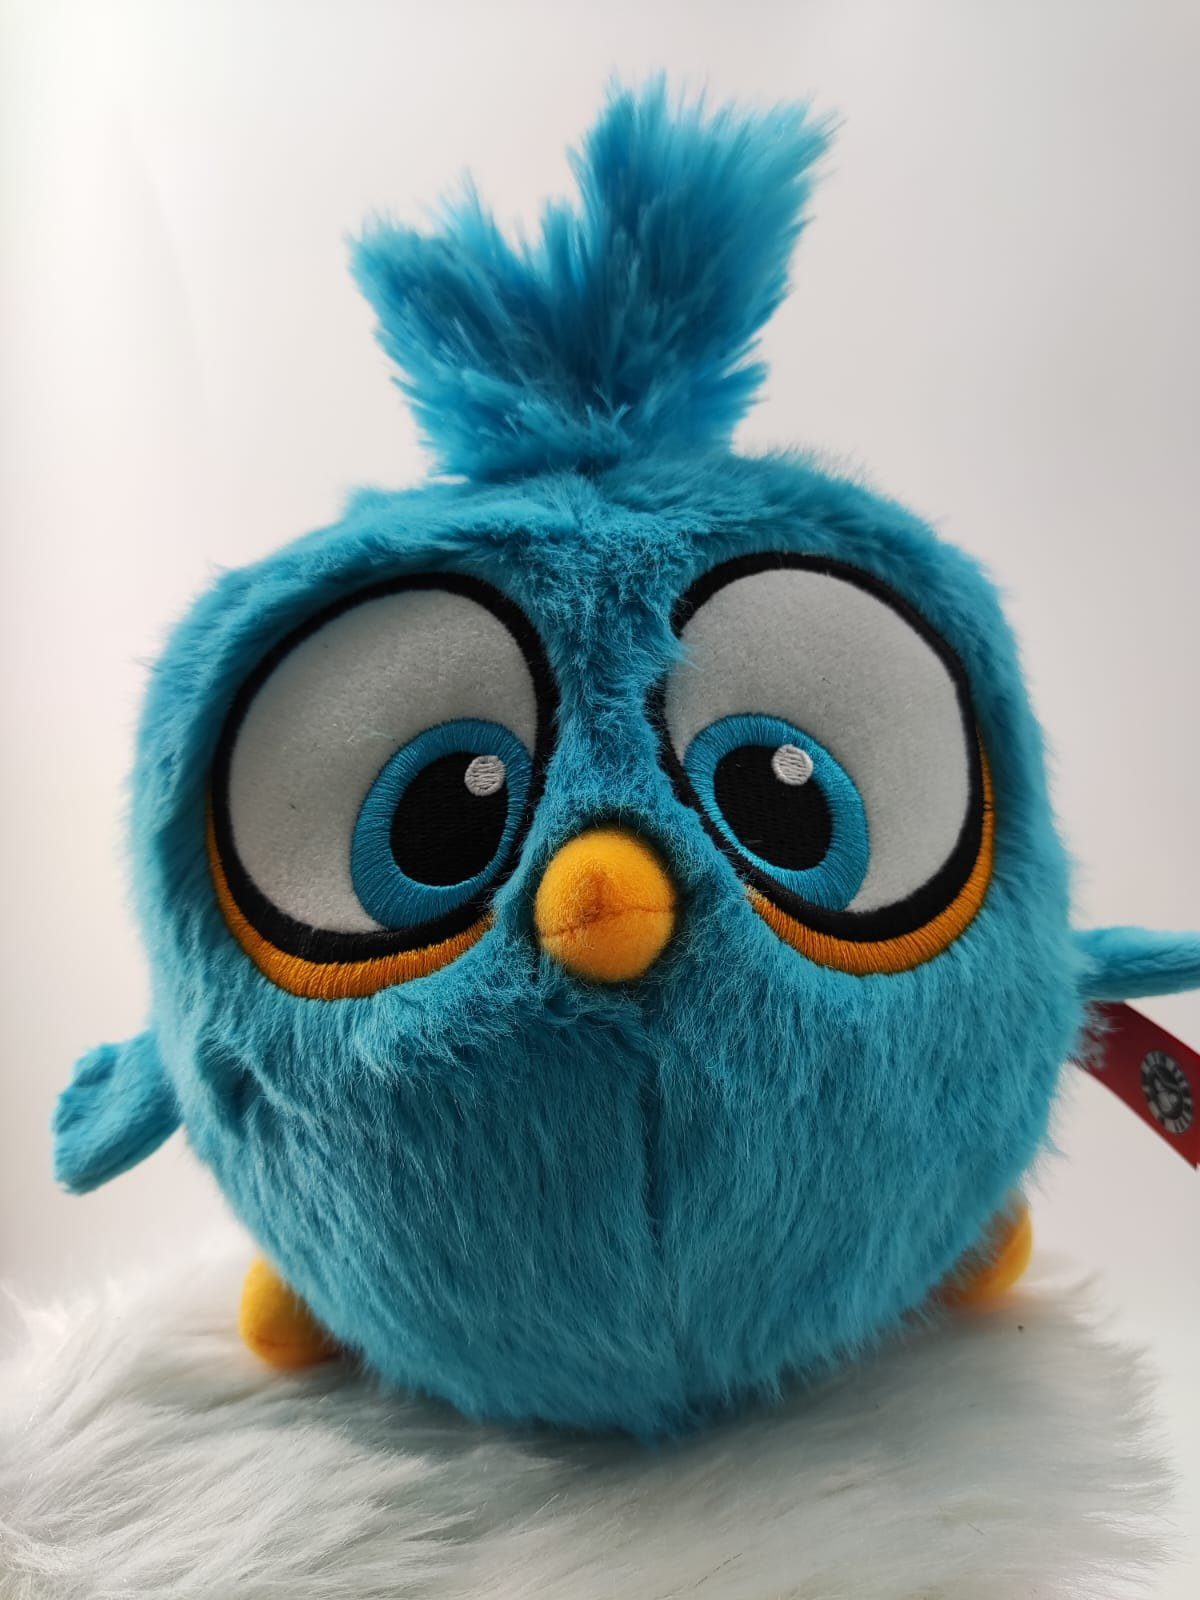 soma Kuscheltier »Angry Birds Kuscheltier 22 cm Vogel Blau Plüschfigur Kuscheltier«, Super weicher Plüsch Stofftier Kuscheltier für Kinder zum spielen